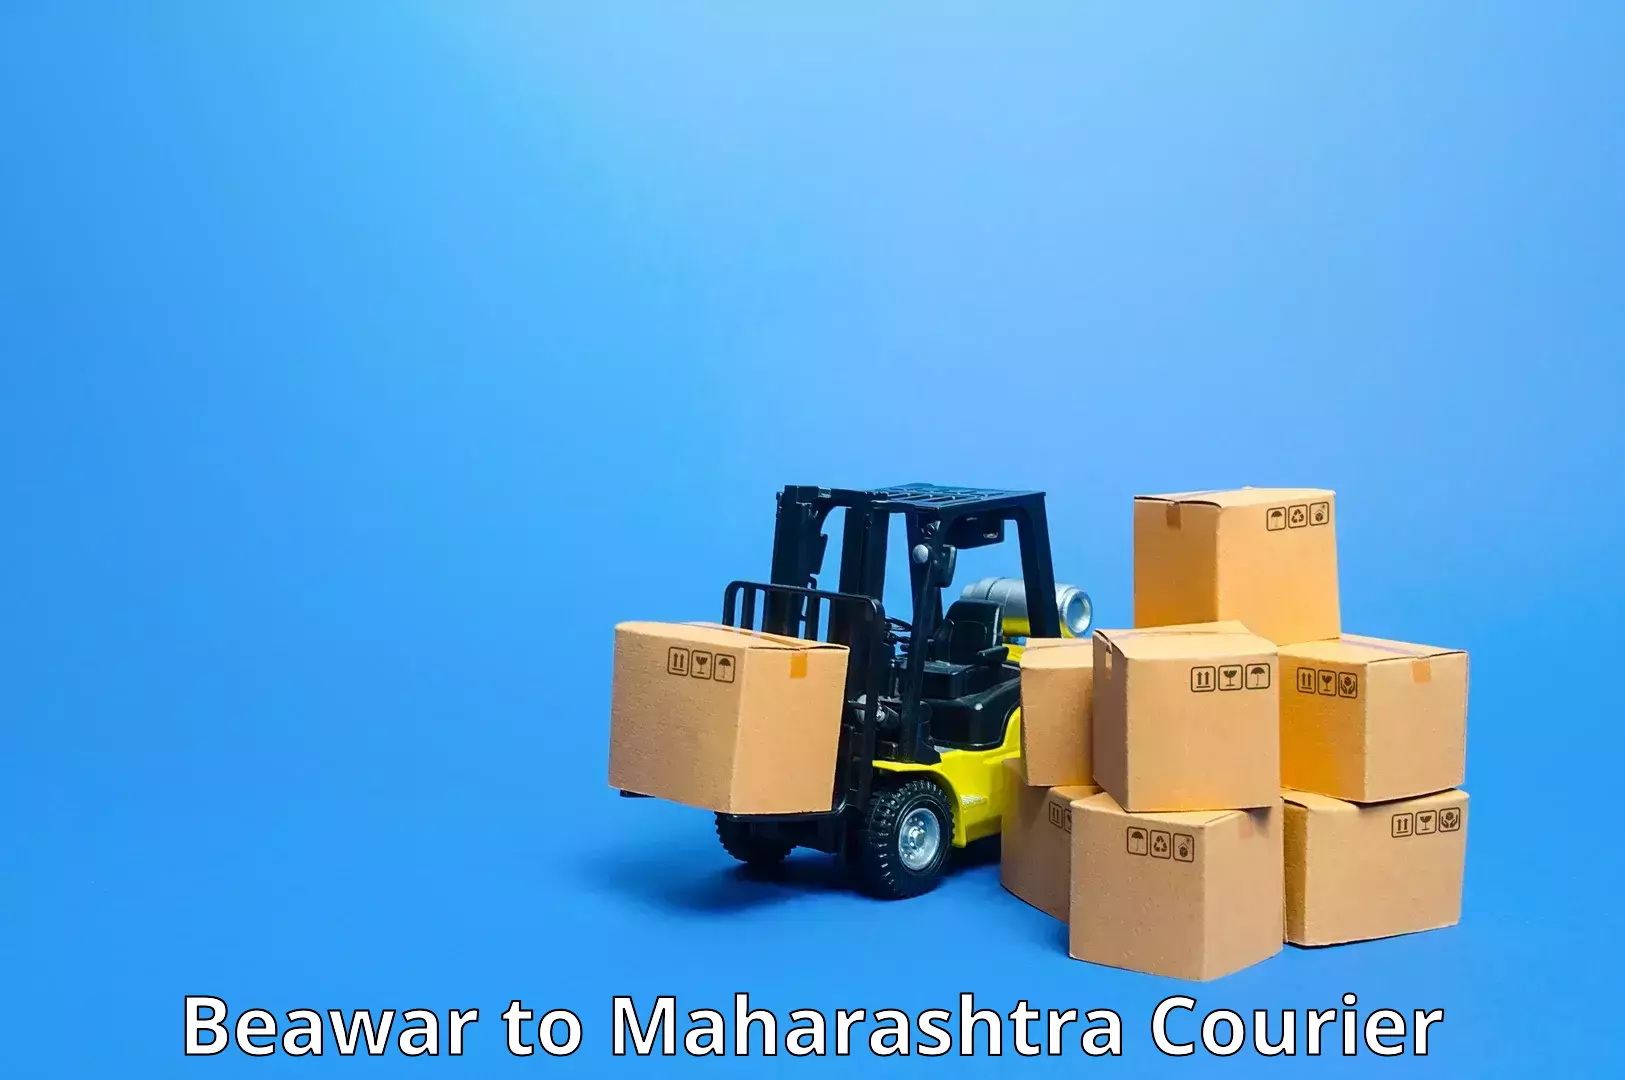 Express package handling Beawar to Maharashtra